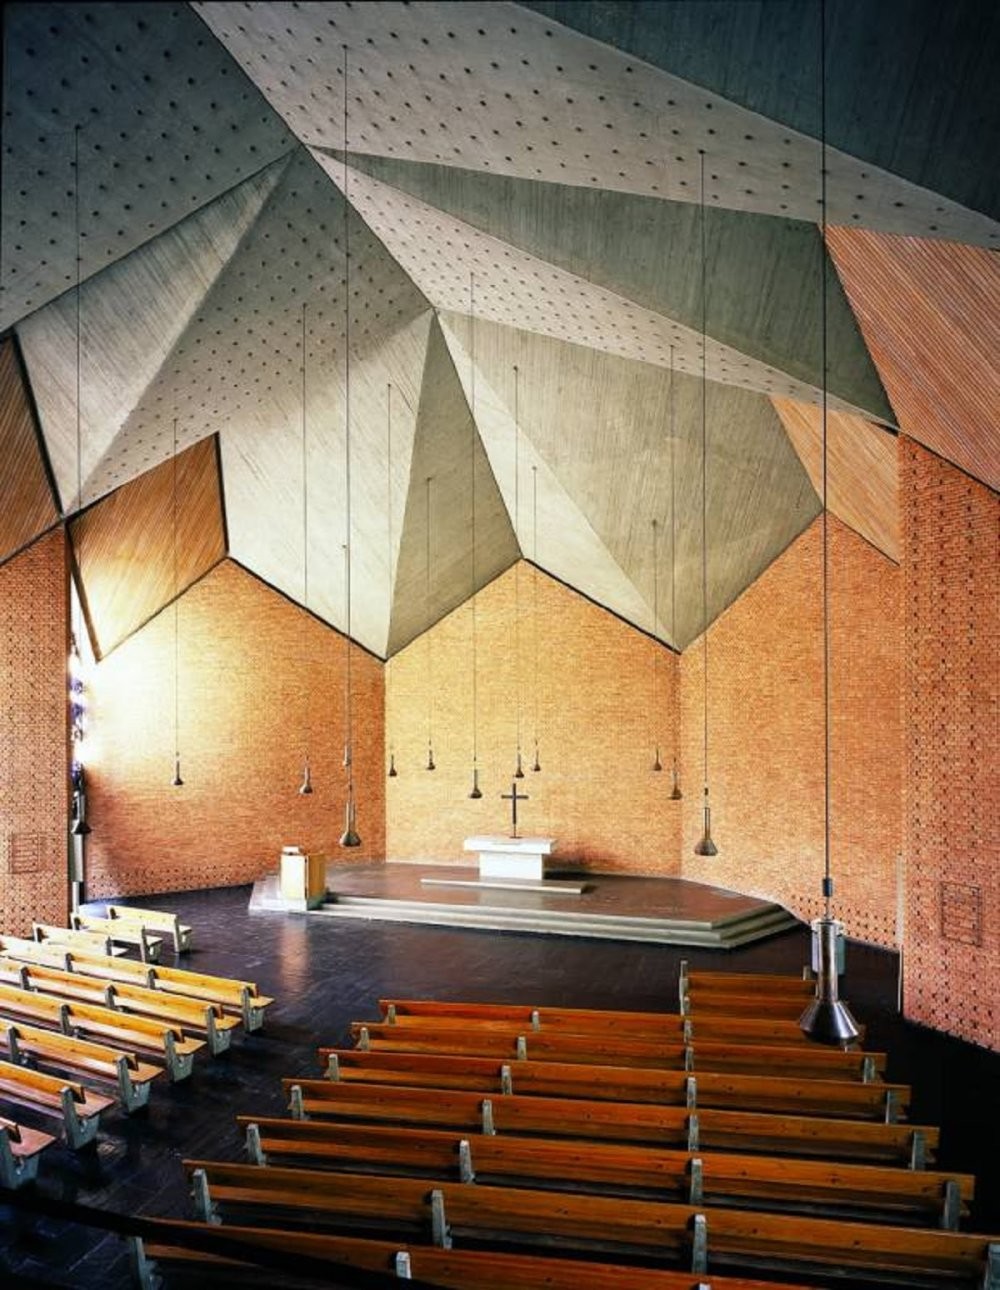 17. Церковь Христа в немецком городе Бохум. Построена в 1956–1959 годах, архитектор - Дитер Остерлен